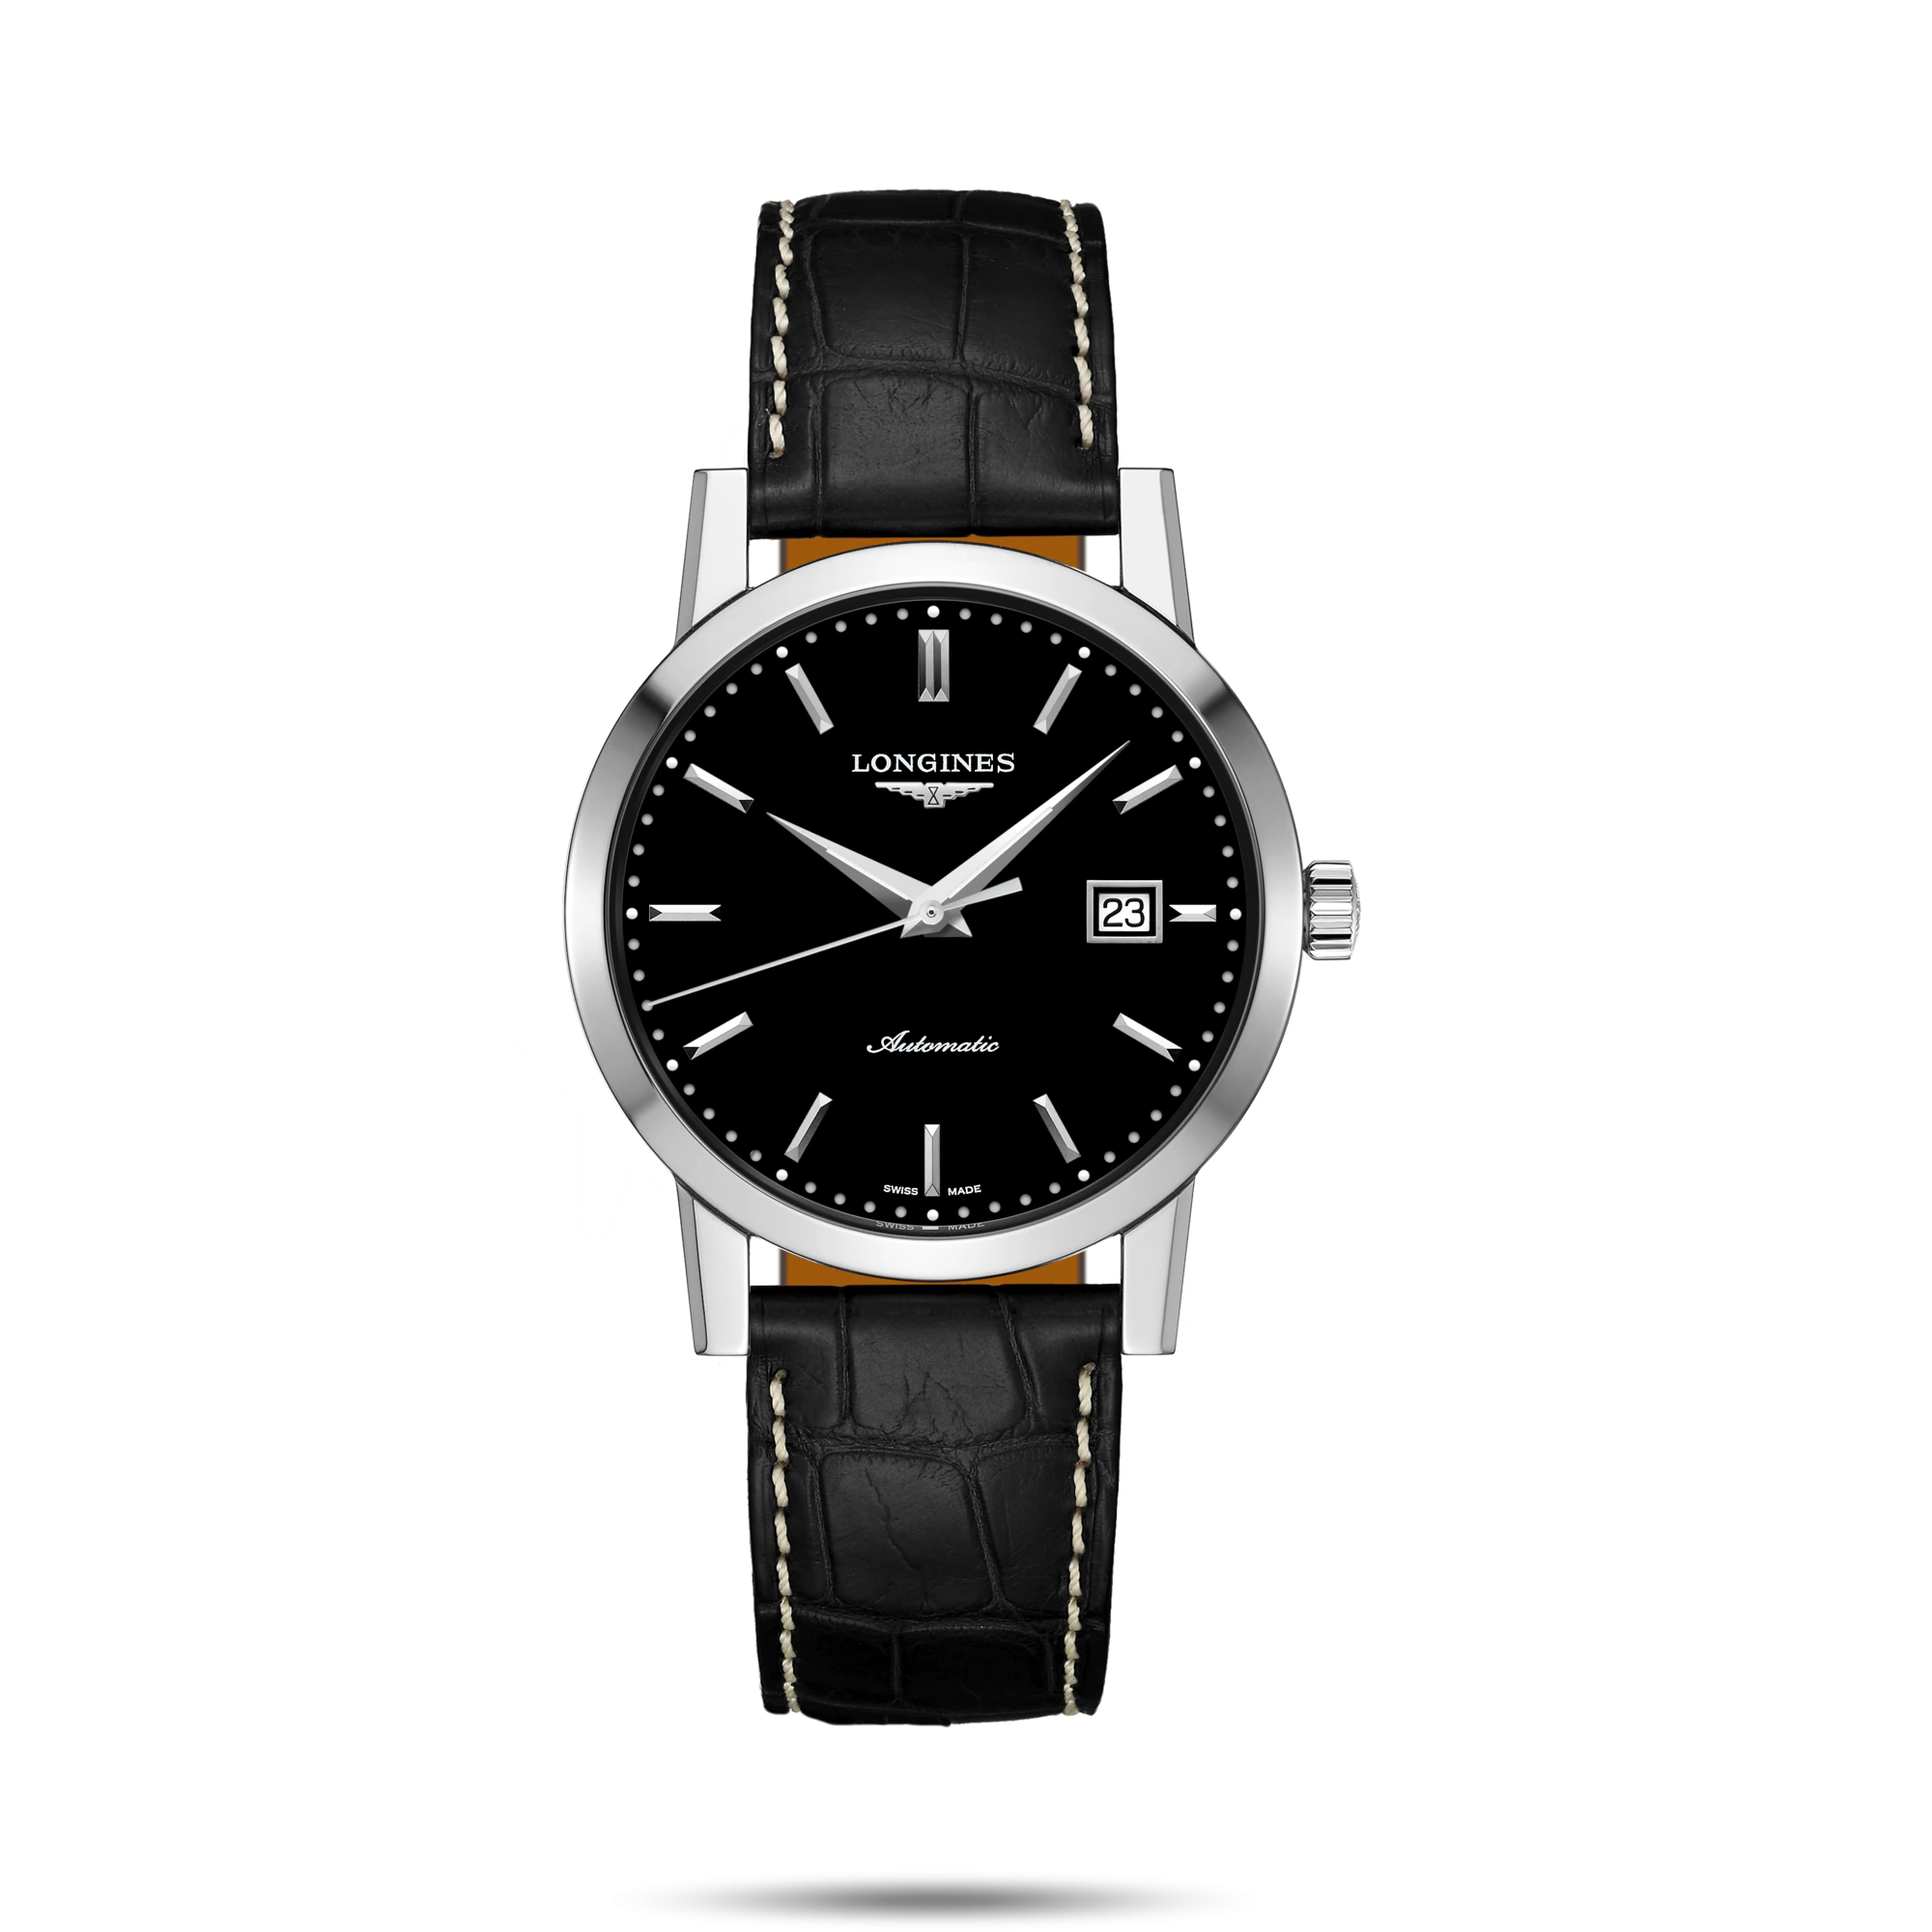 ساعت لونژین مدل L4.825.4.52.0